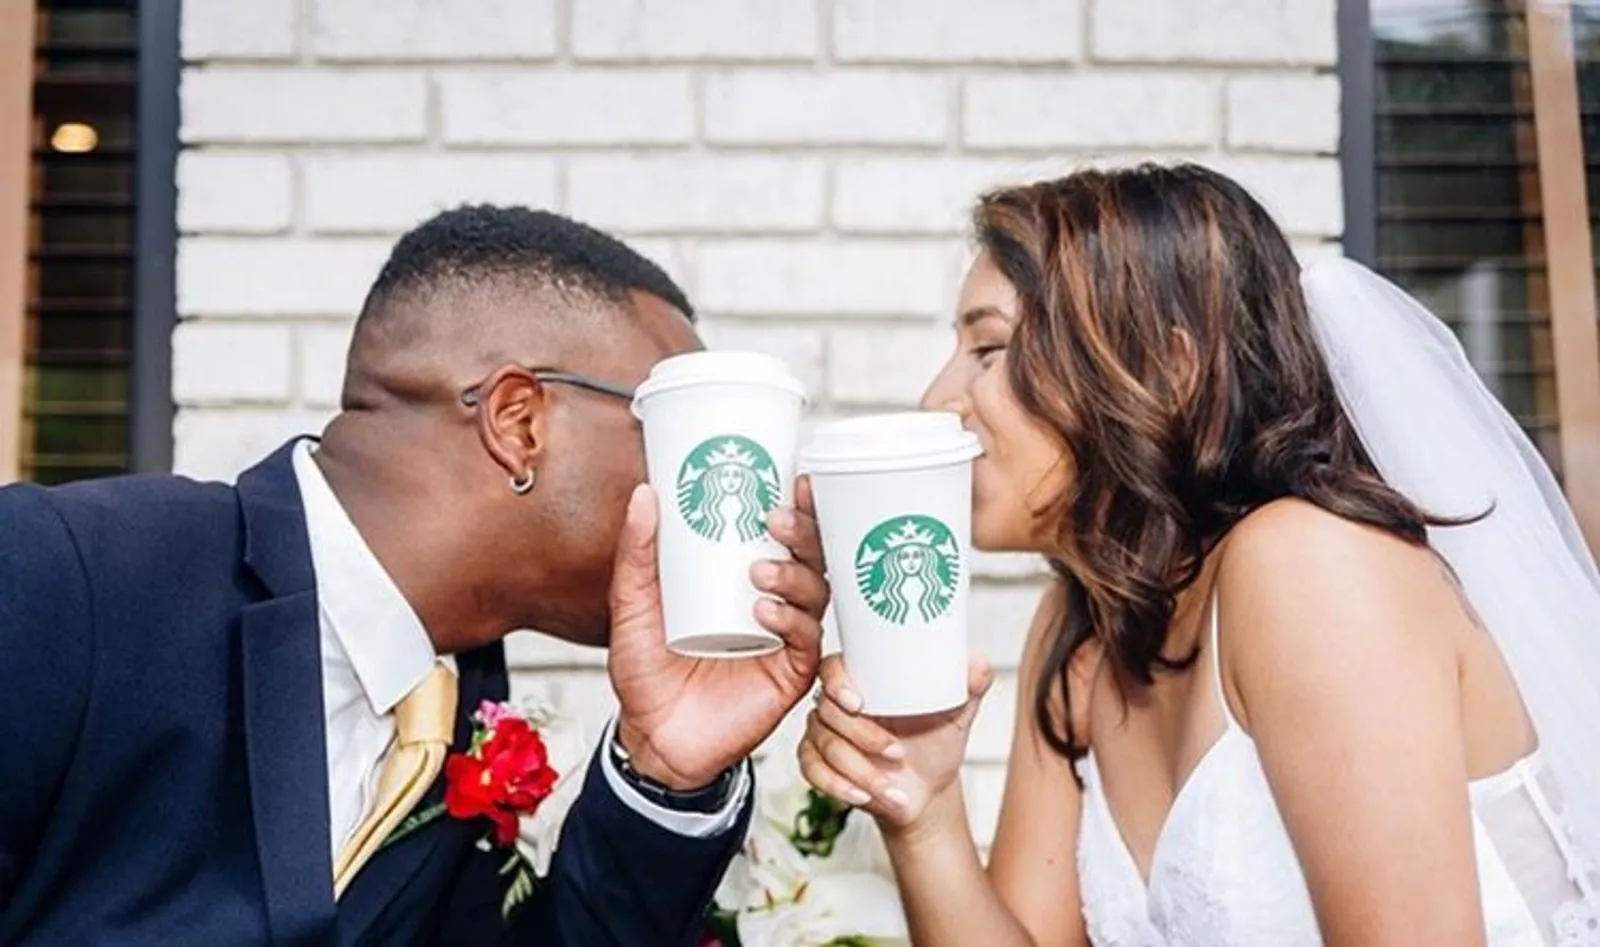 Starbucks Wedding, Saat Banyak Pasangan Memilih Menikah di Kedai Kopi